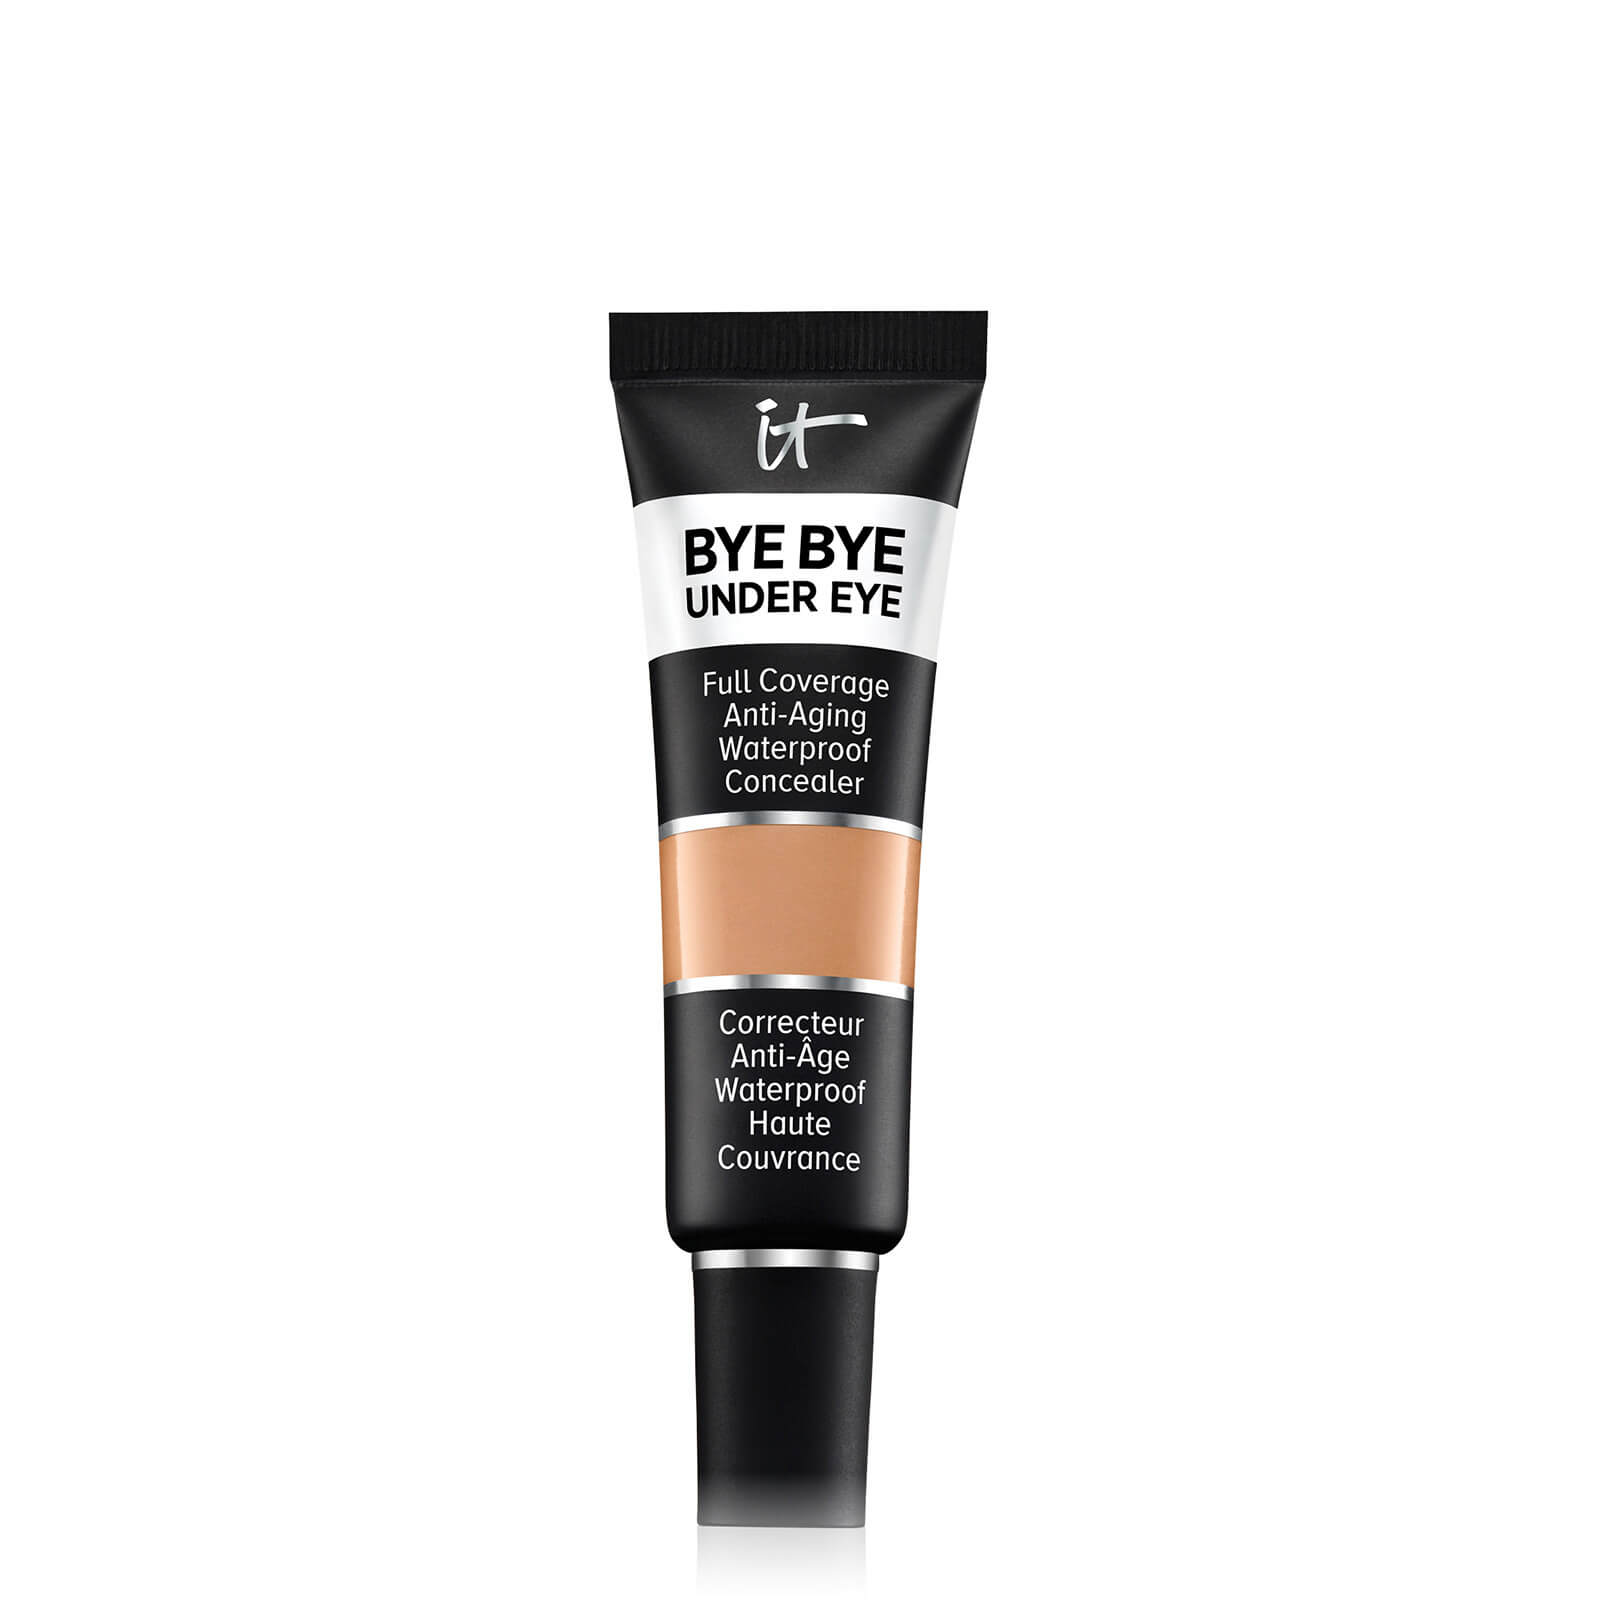 IT Cosmetics Bye Bye Under Eye Concealer 12ml (Various Shades) - Tan Bronze